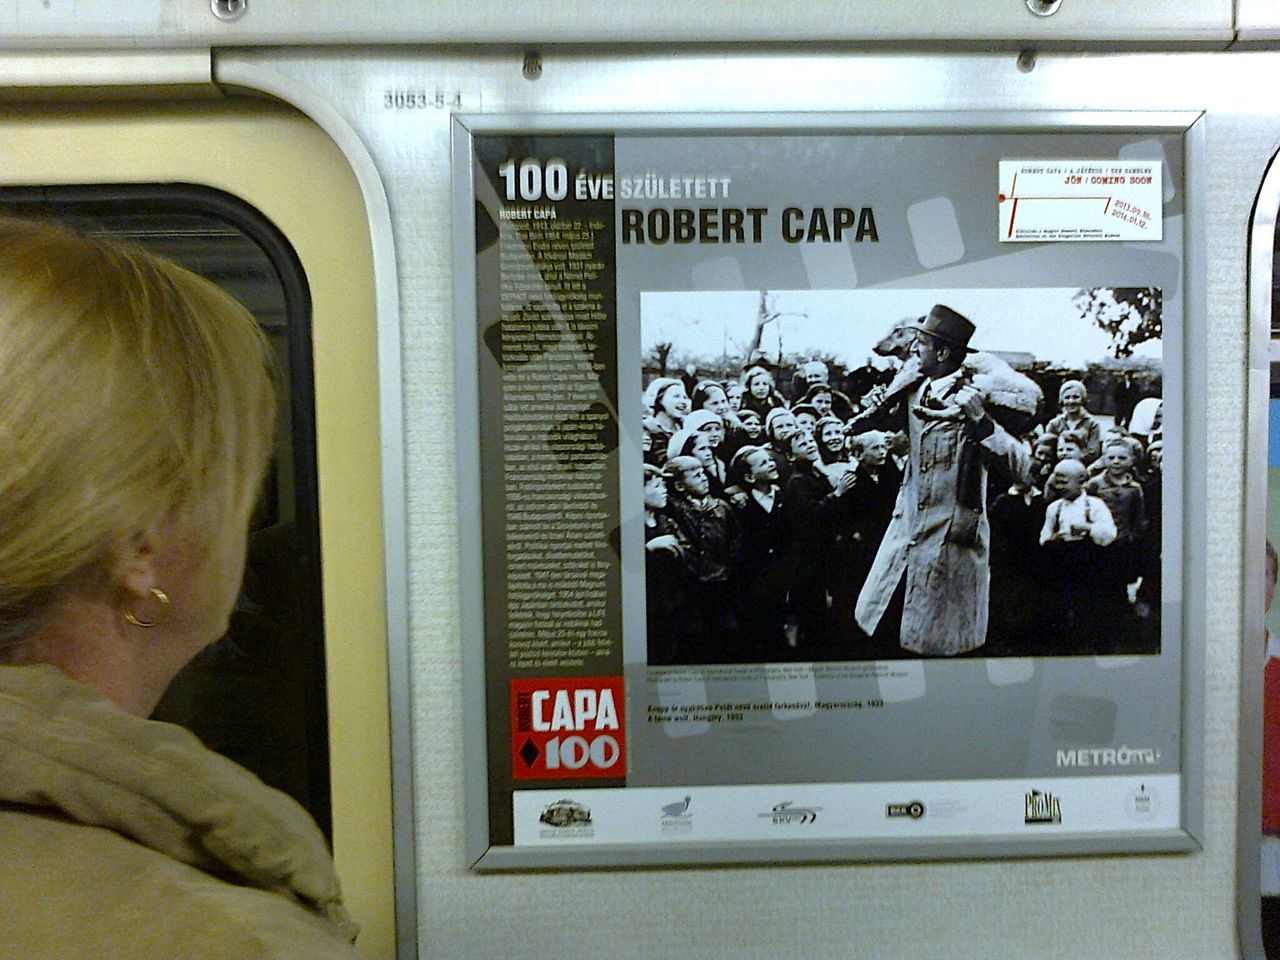 Balogh Dávid a 3-as metrón az Arany János utcánál fényképezett